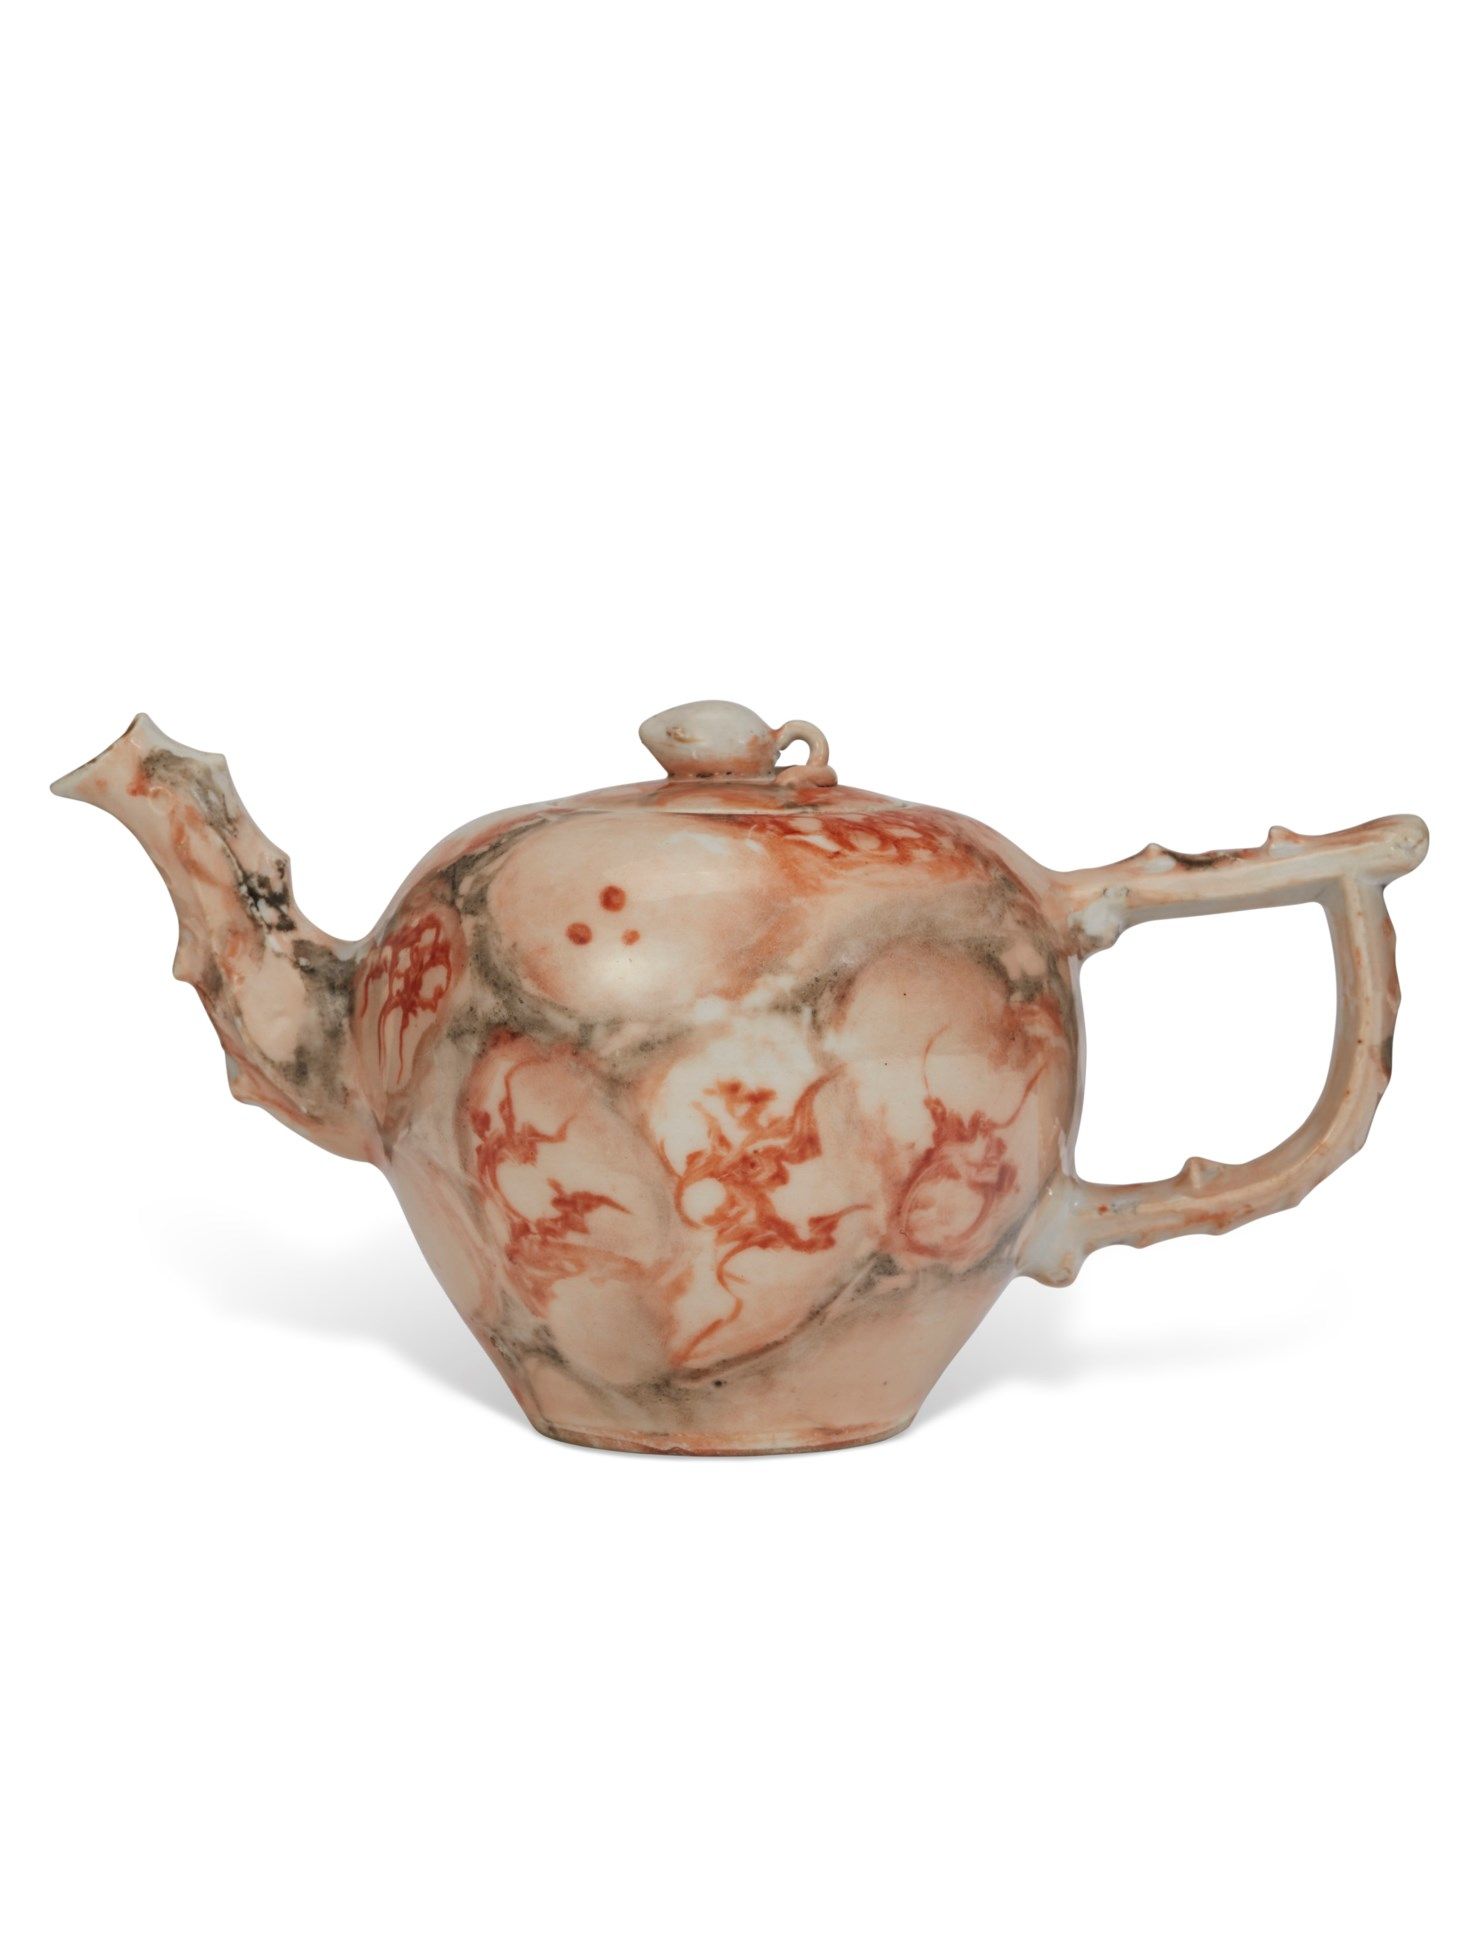 A Chinese Export Porcelain Faux Marble Tea Pot